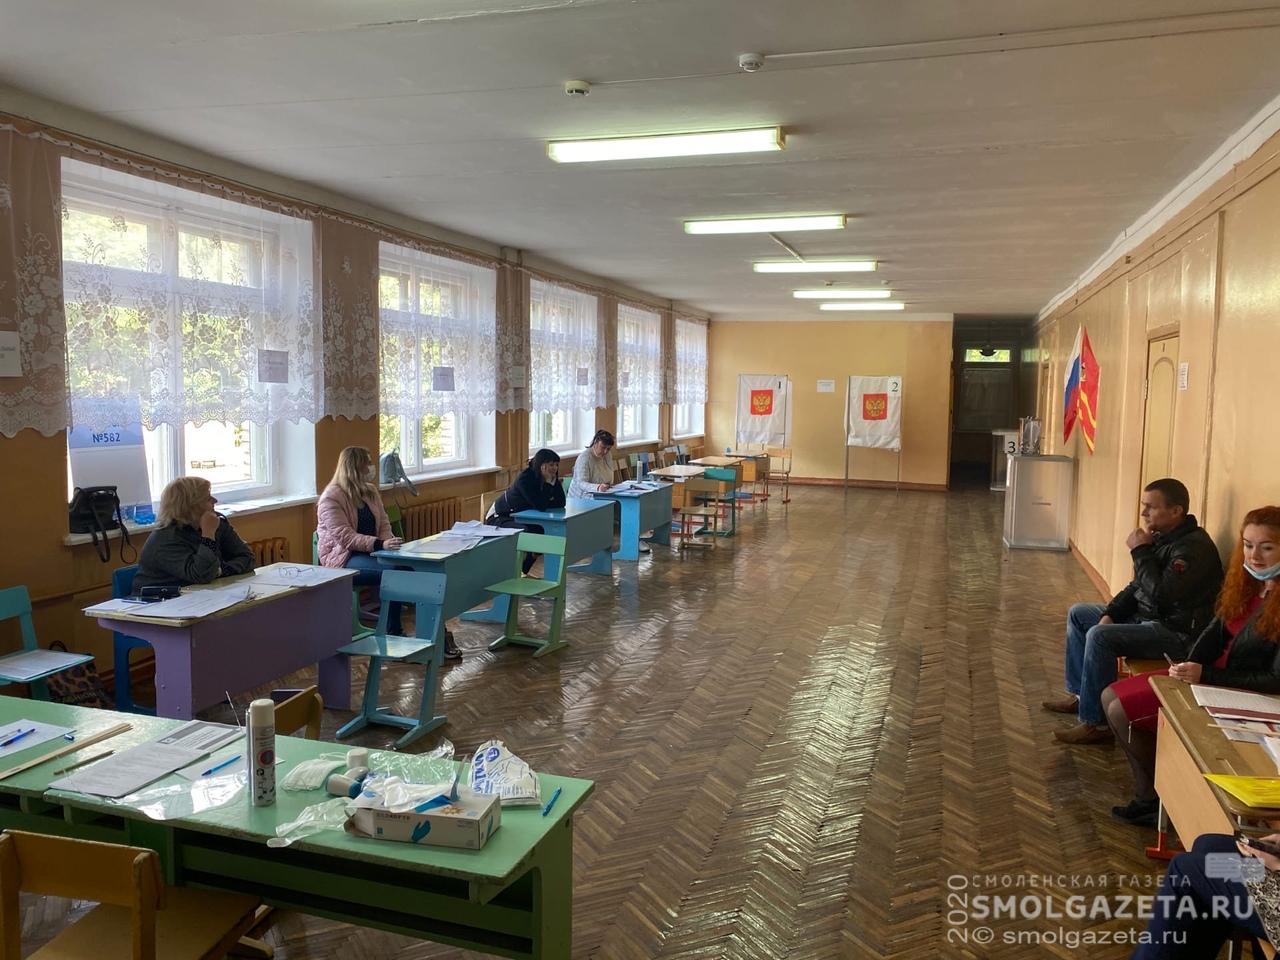 Прием протоколов на выборах губернатора Смоленской области пройдет под видеонаблюдением